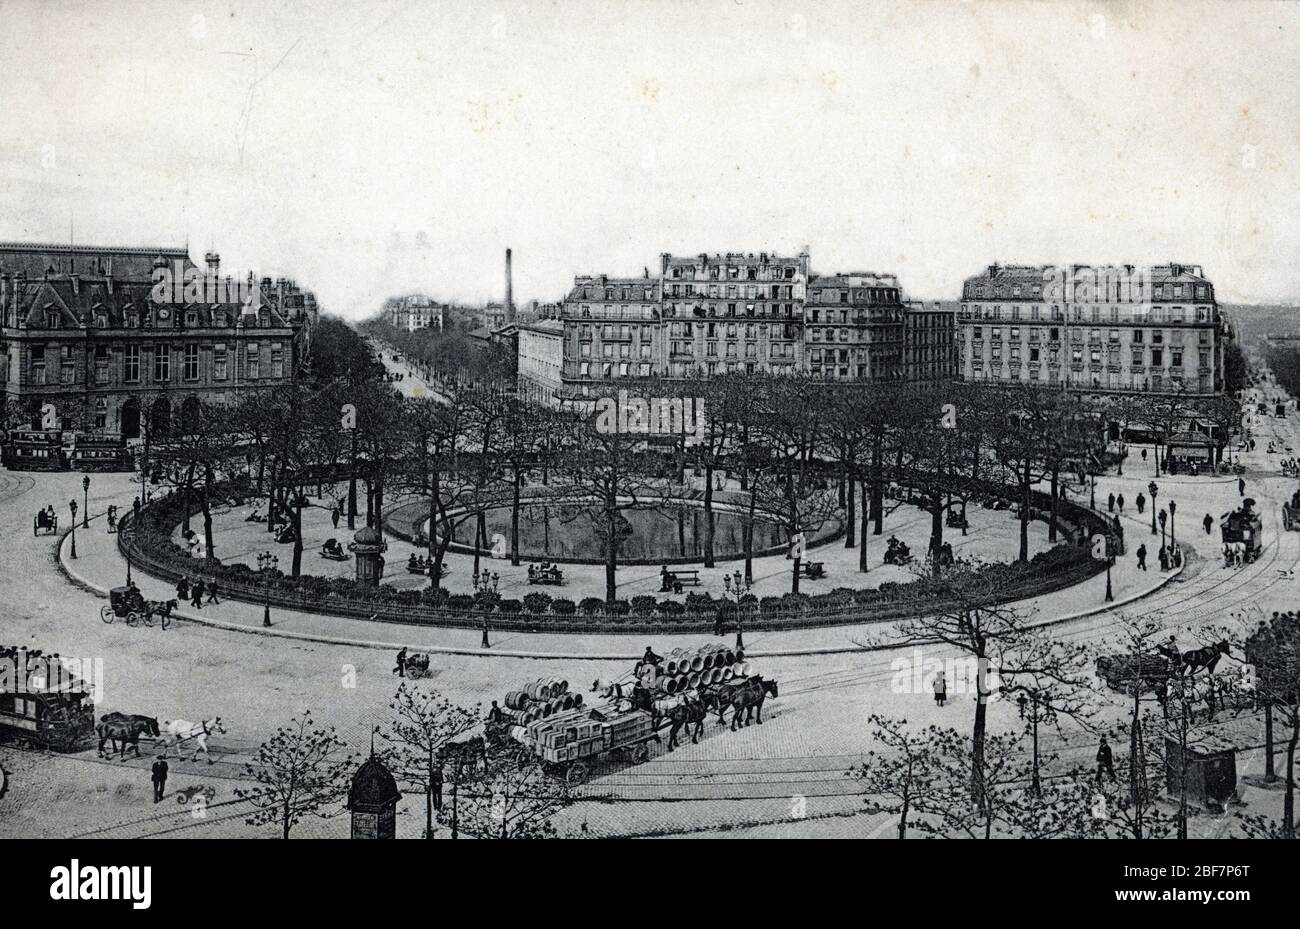 Vue de la place d'Italie a Paris vers 1910 Carte postale Collection privee Stock Photo